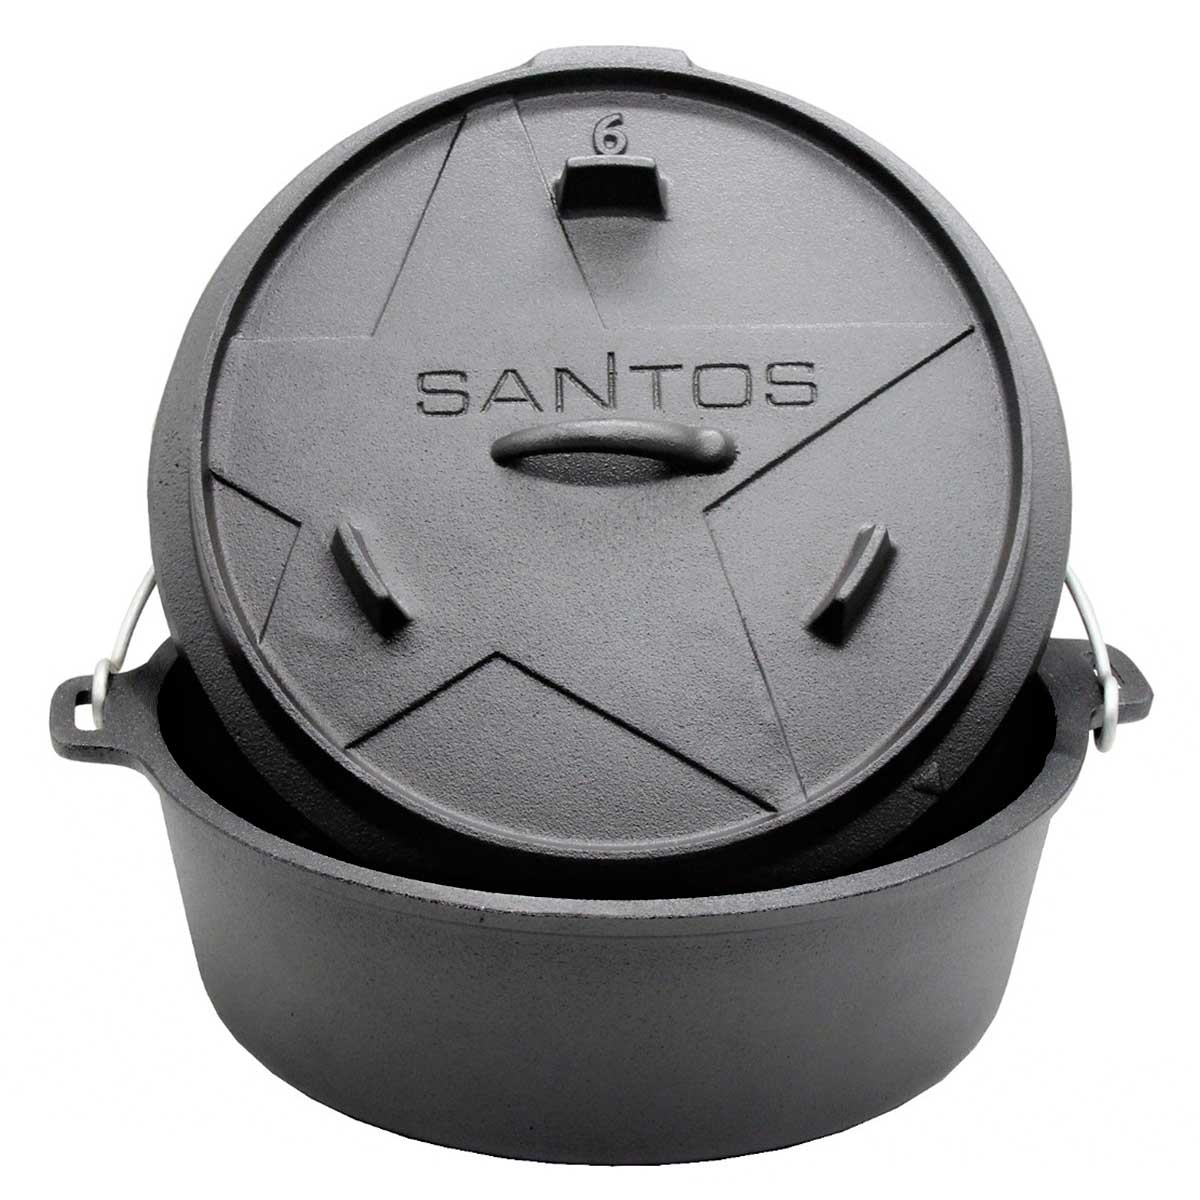 SANTOS Dutch Oven, Schmortopf für Außenküche, 6 Qt ohne Füße, Gusseisen